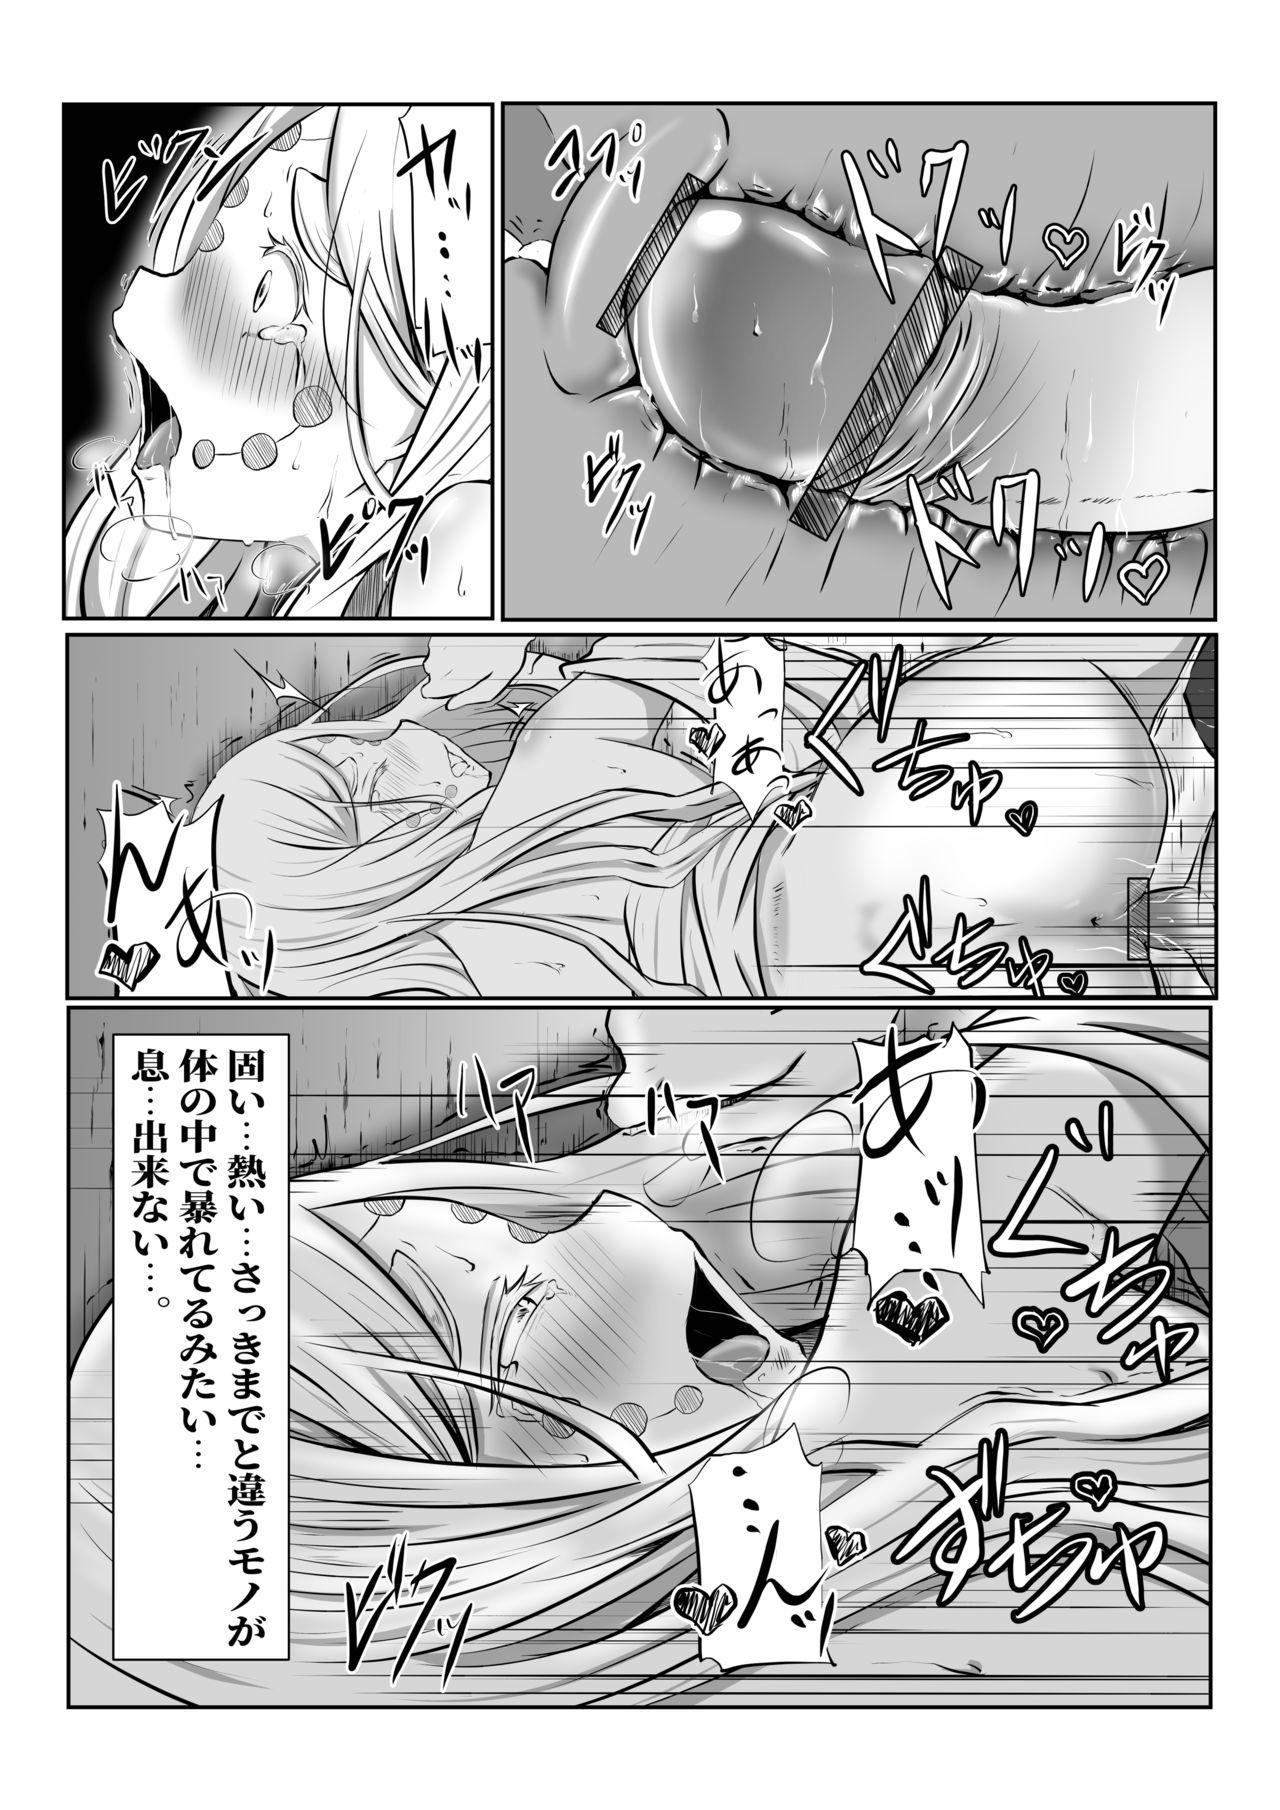 Blackdick Hinokami Sex. - Kimetsu no yaiba | demon slayer White Girl - Page 26